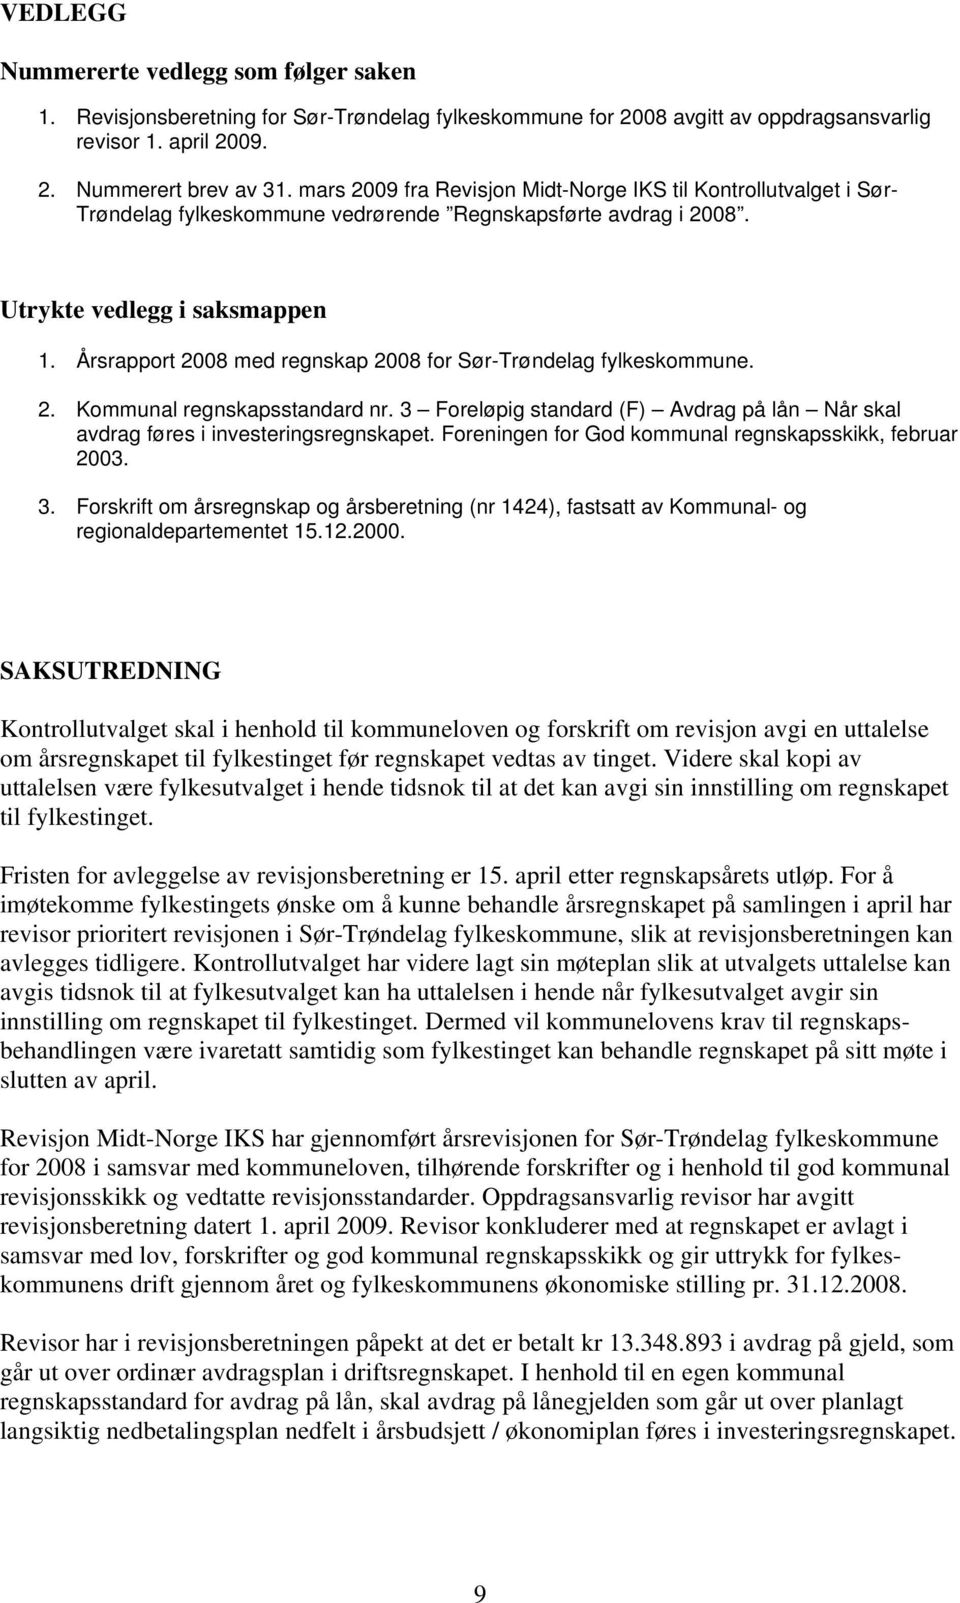 Årsrapport 2008 med regnskap 2008 for Sør-Trøndelag fylkeskommune. 2. Kommunal regnskapsstandard nr. 3 Foreløpig standard (F) Avdrag på lån Når skal avdrag føres i investeringsregnskapet.